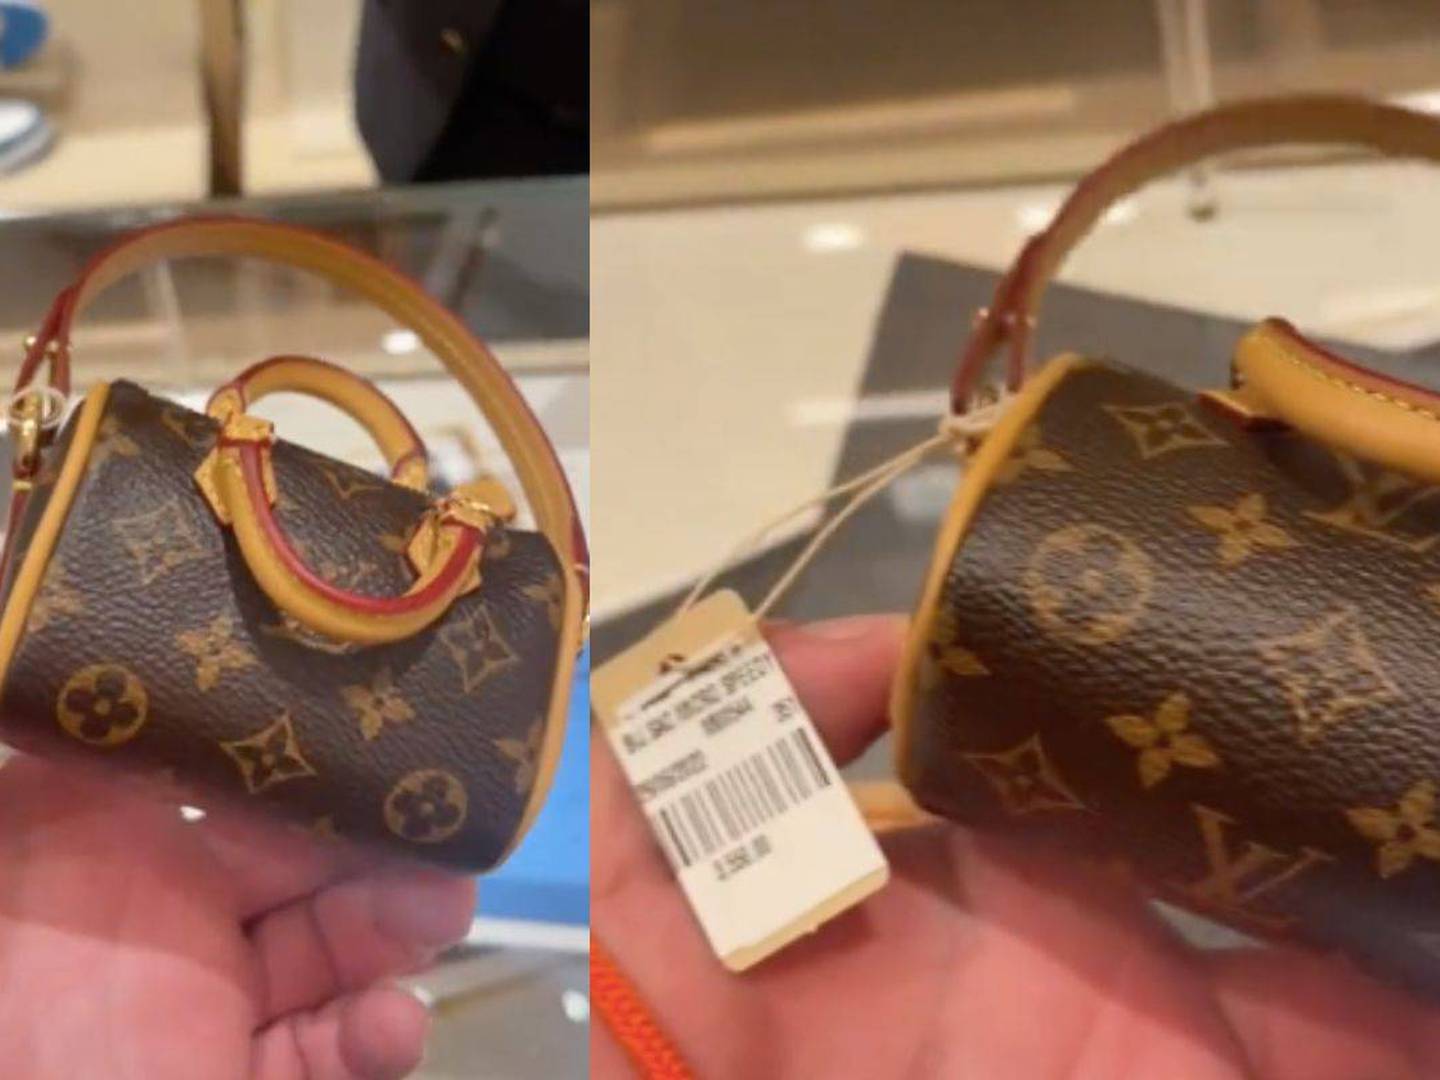 Así es el polémico bolso de 900 euros de Louis Vuitton para recoger las  heces de